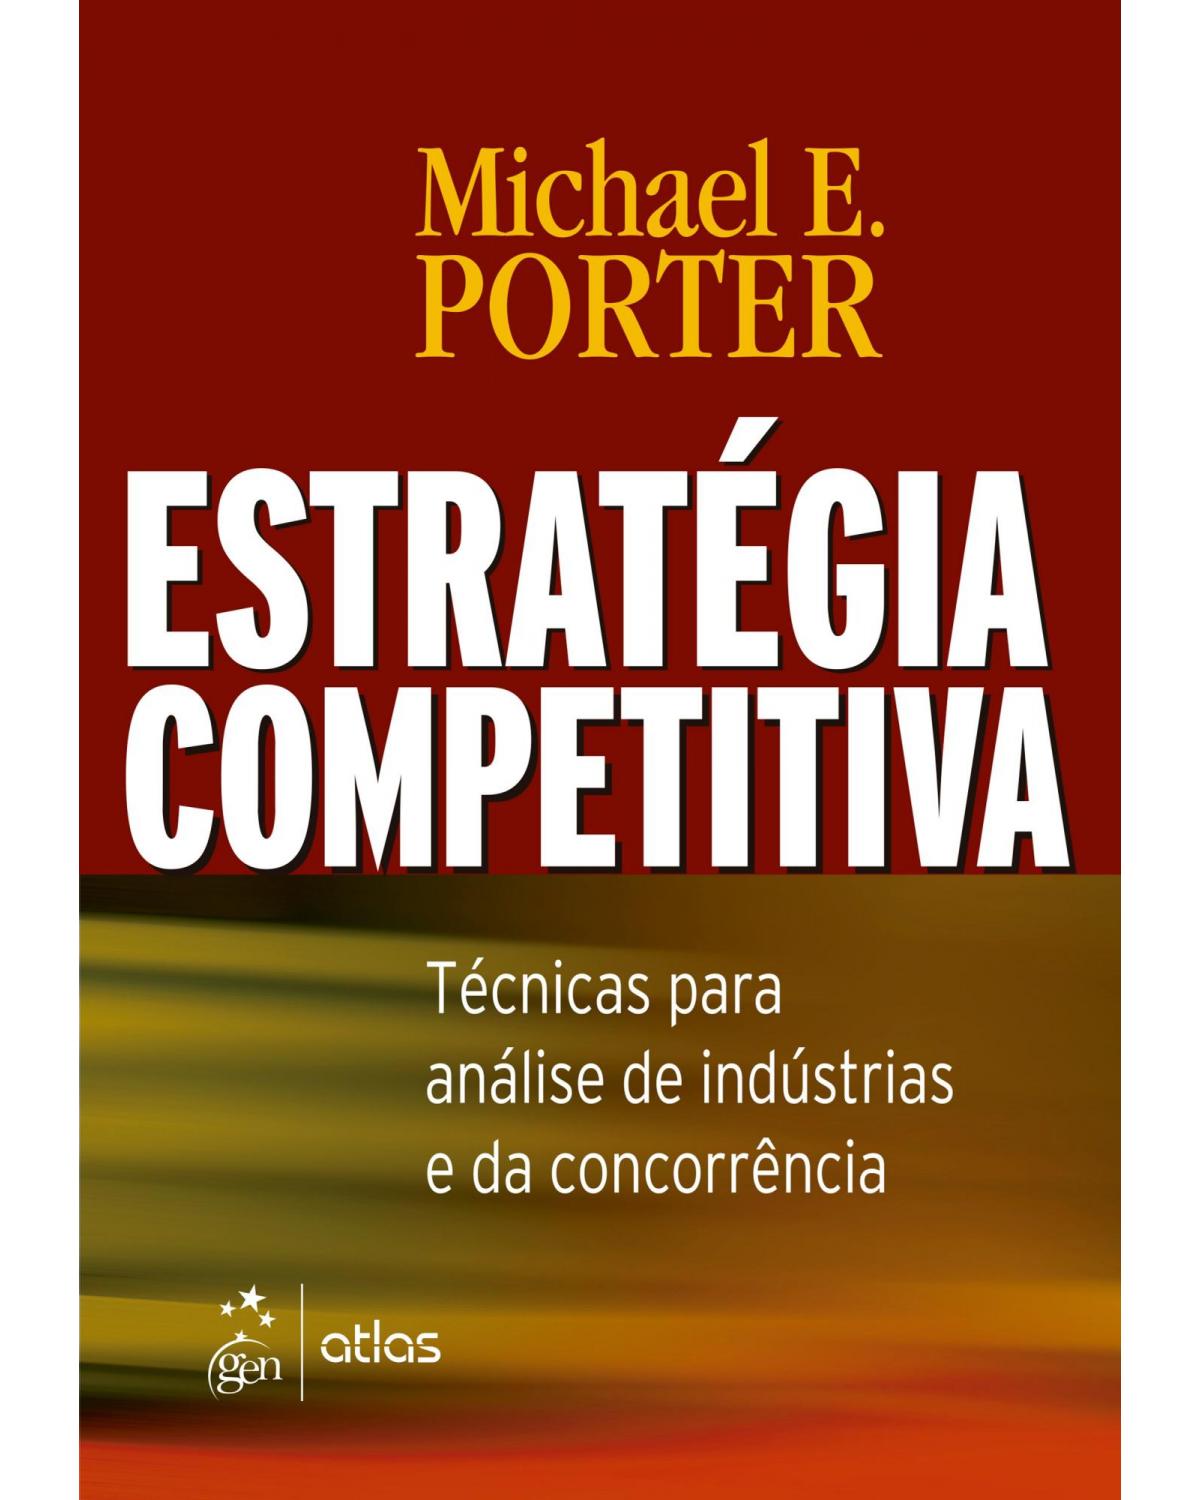 Estratégia competitiva - técnicas para análise de indústrias e da concorrência - 1ª Edição | 2005